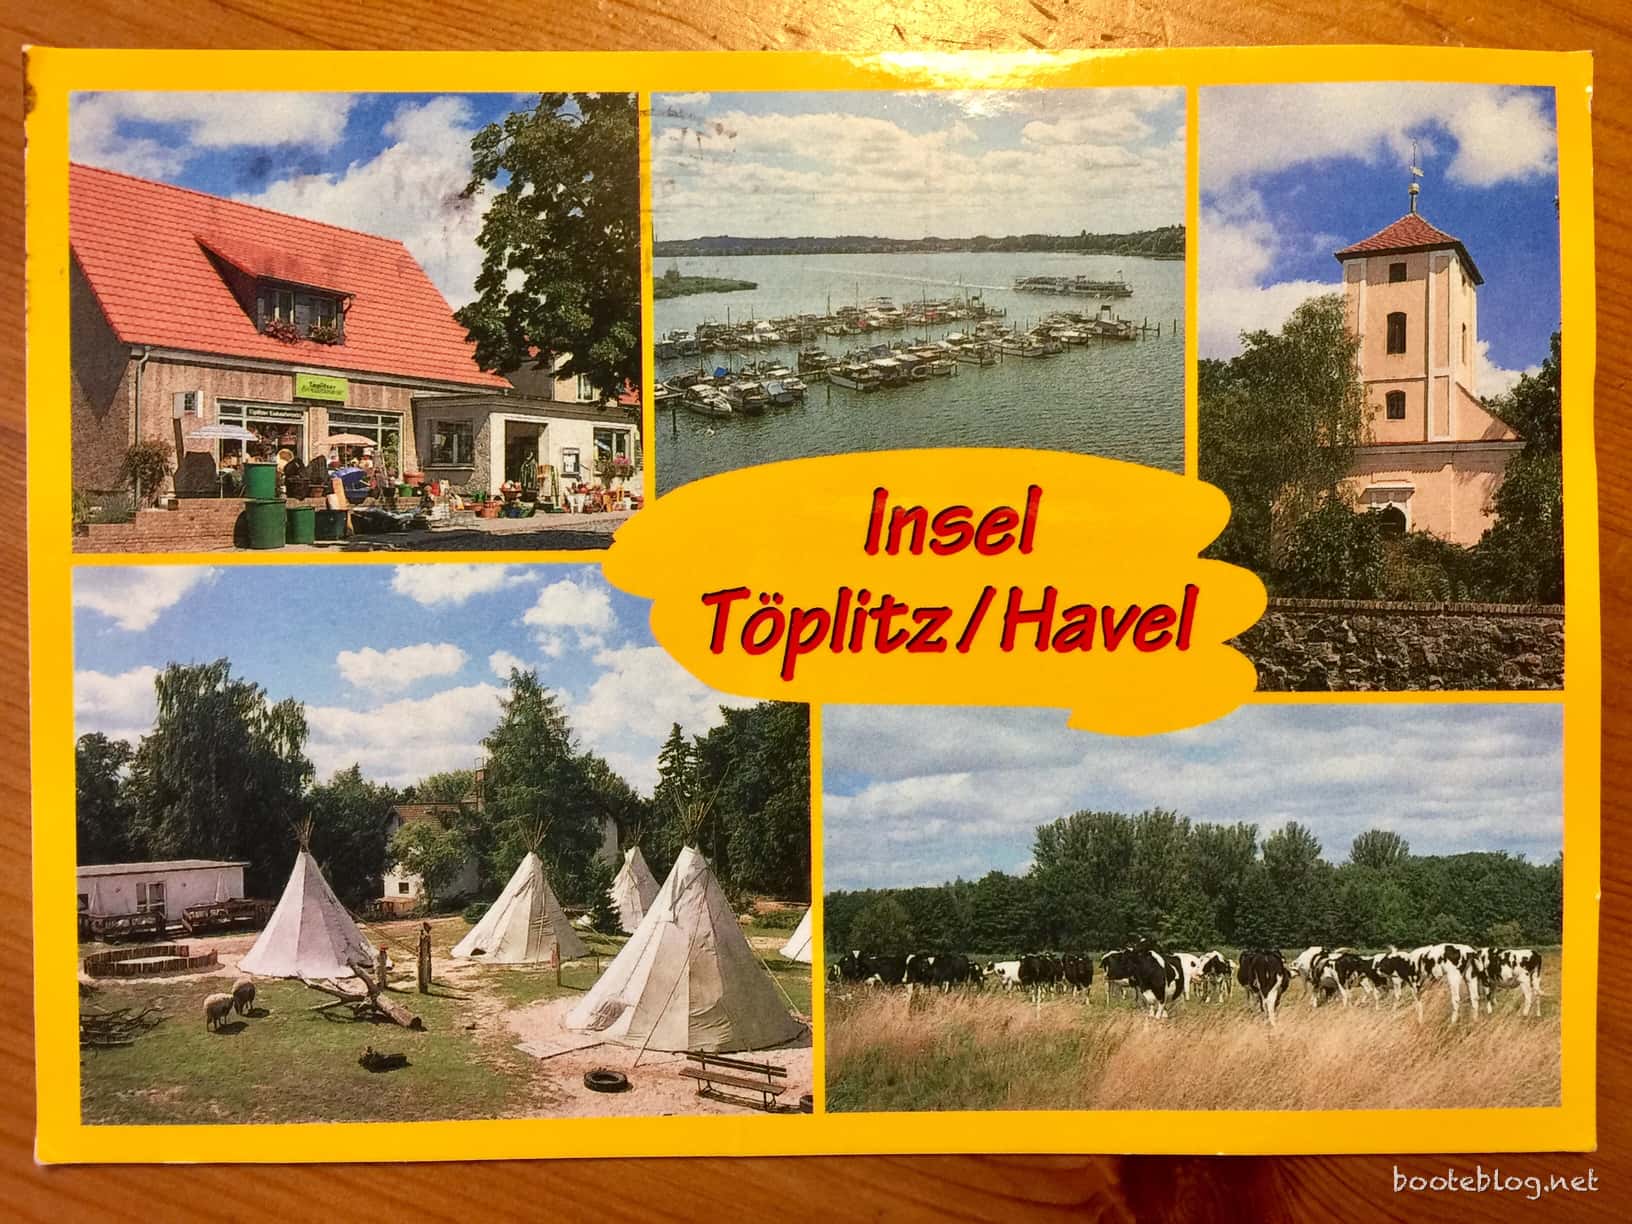 Postkarte von der Insel Töplitz/Havel